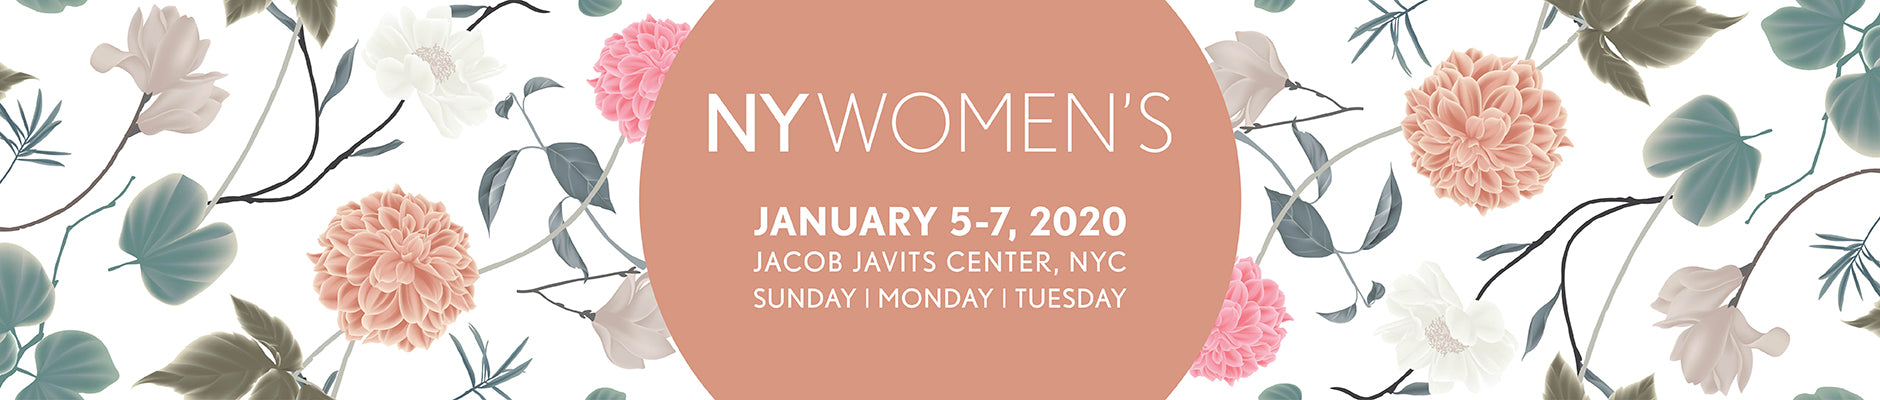 NY Women's Experience | New York Fashion Trade Show January 2020